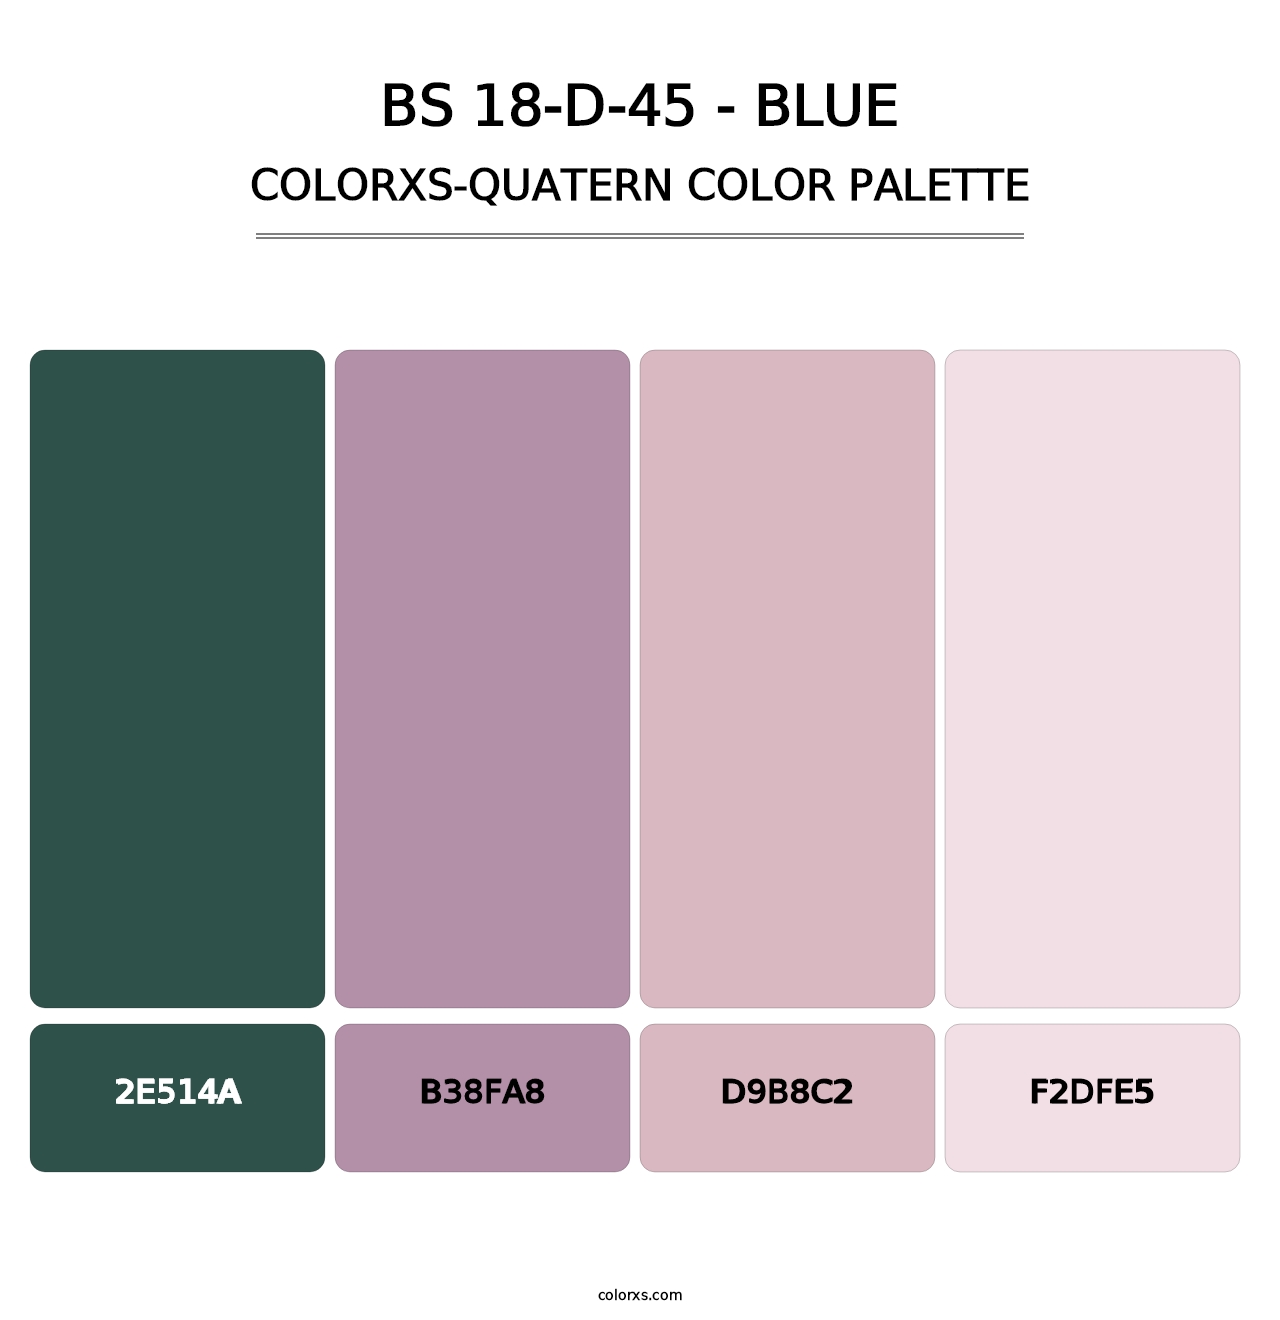 BS 18-D-45 - Blue - Colorxs Quatern Palette